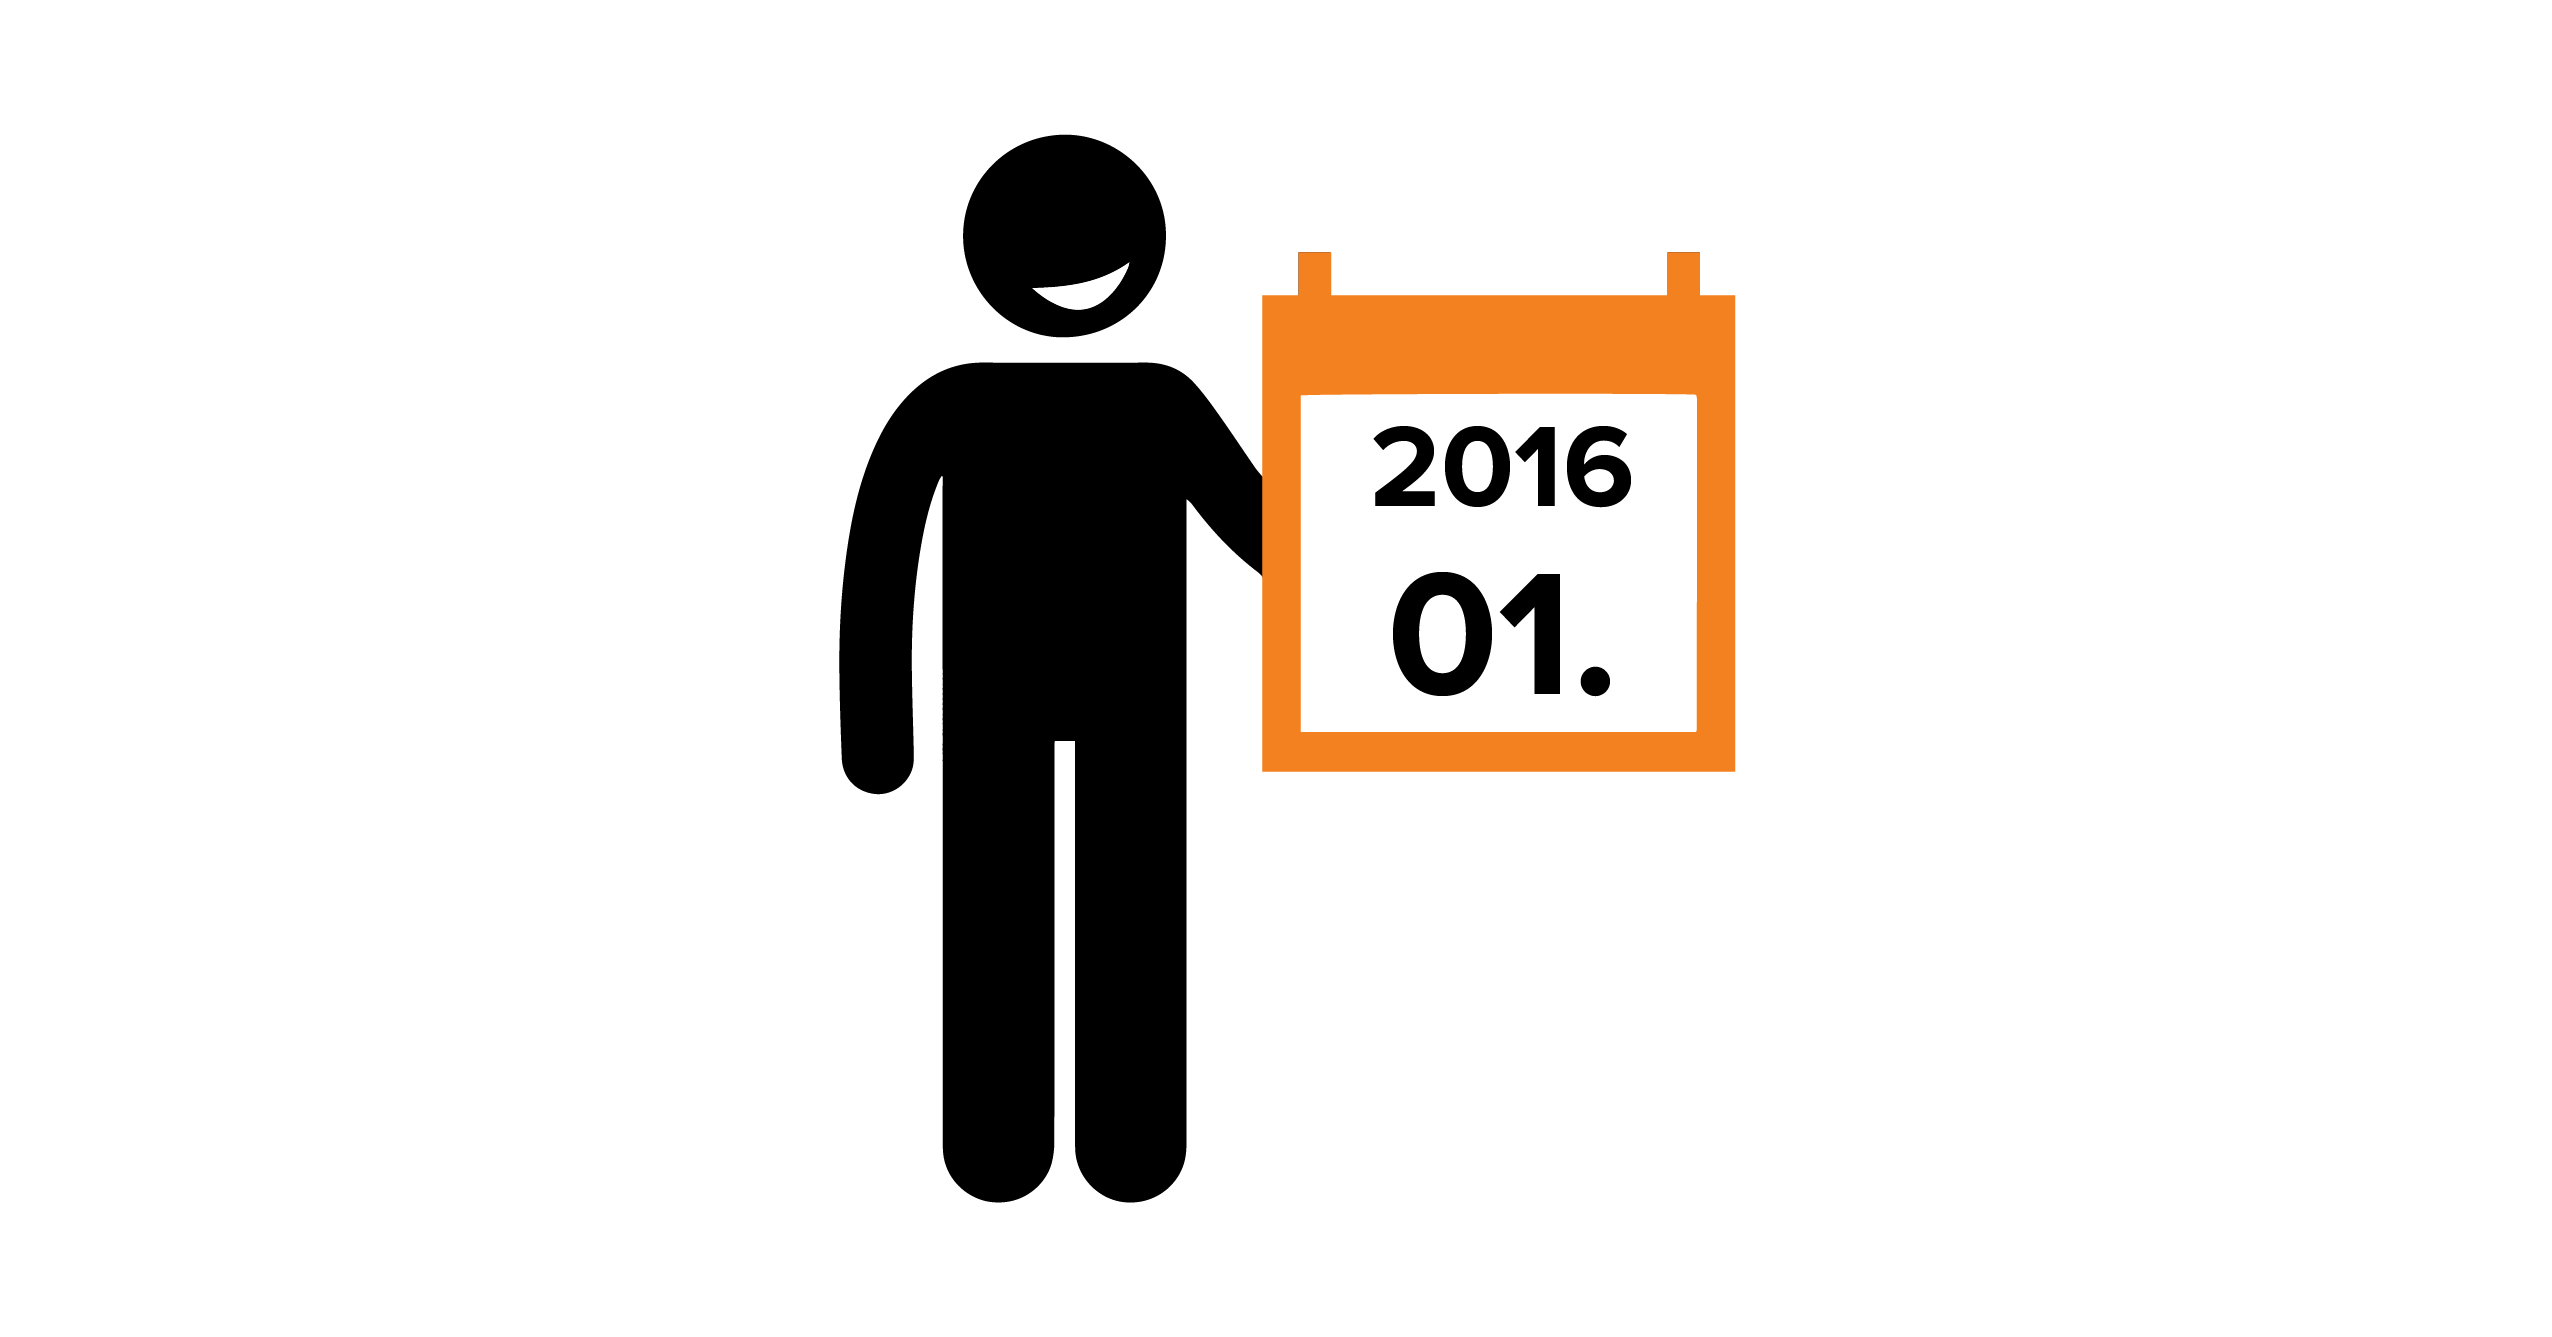 Na grafice sylwetka człowieka, trzymającego kalendarz z datą 01.2016